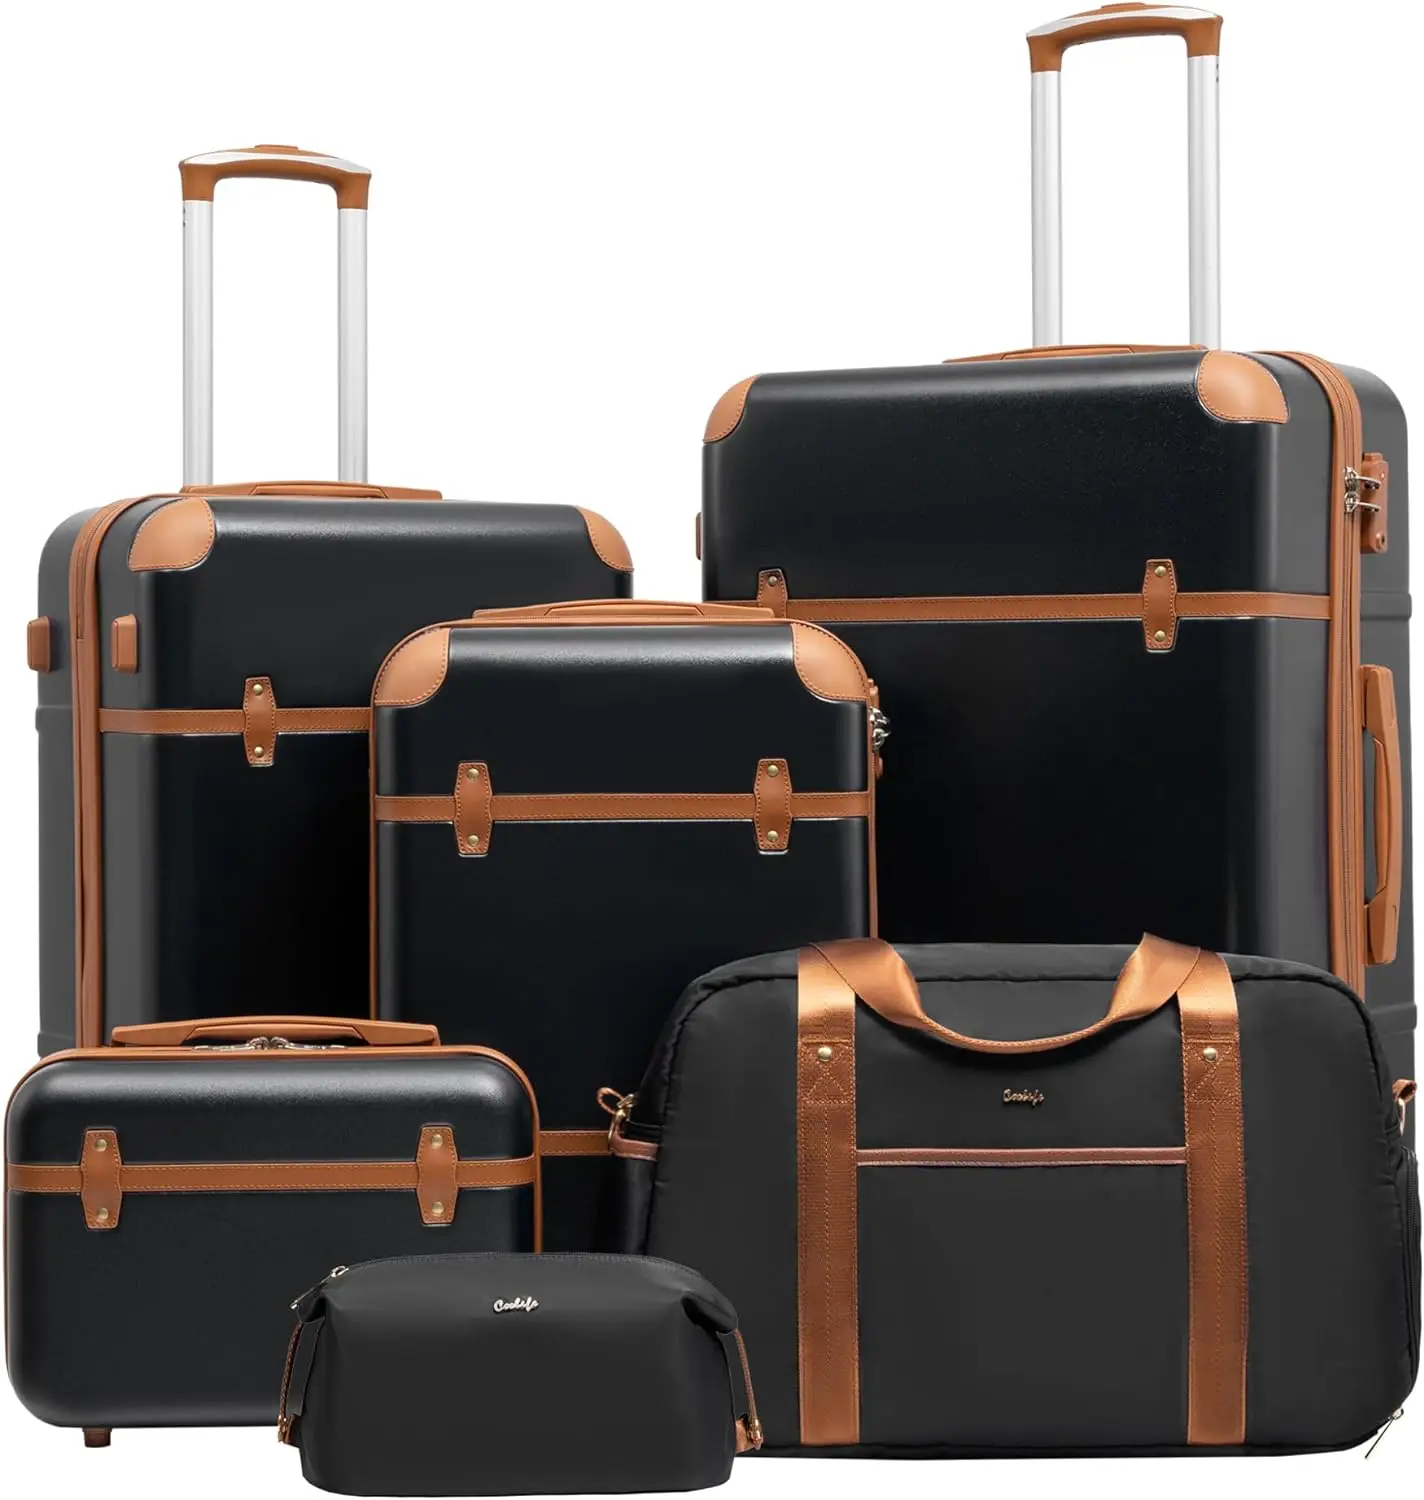 

Coolife Luggage Set 3 Piece Suitcase Set Carry On Luggage PC Hardside Luggage TSA Lock Spinner Wheels Telescopic Handle